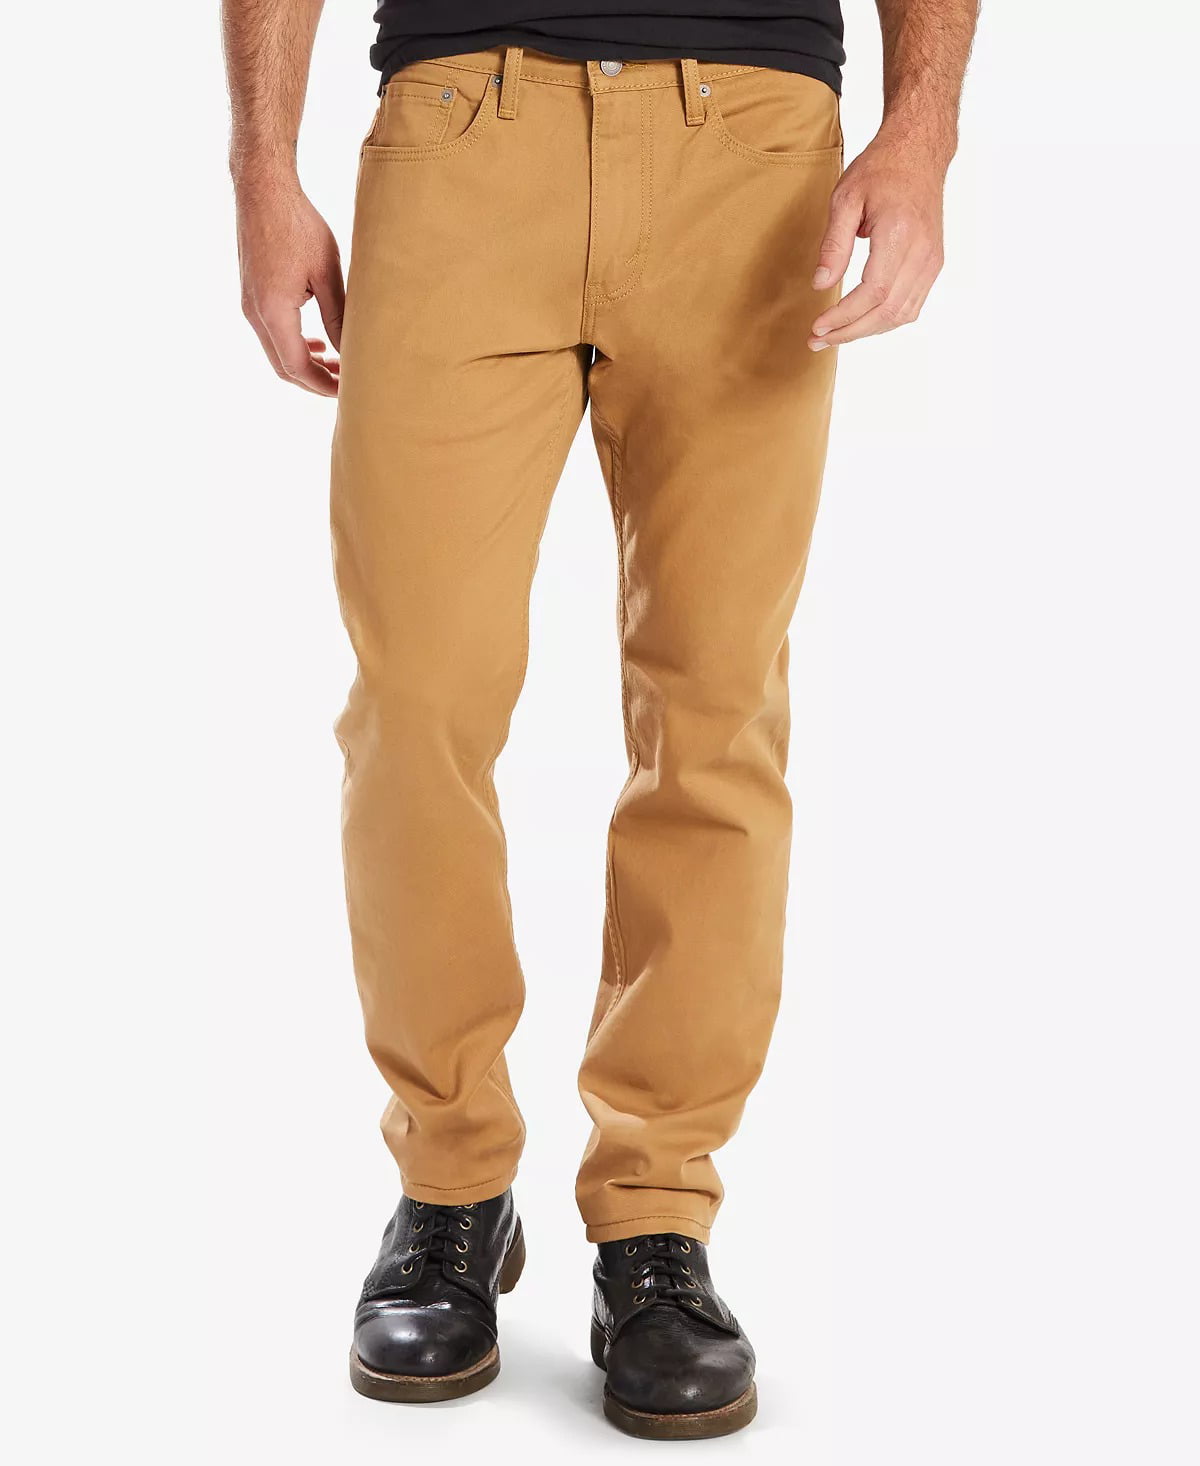 Levi's CARAWAY-WATERLESS Men's 502 Taper Soft Twill Jeans, US 34x32 -  